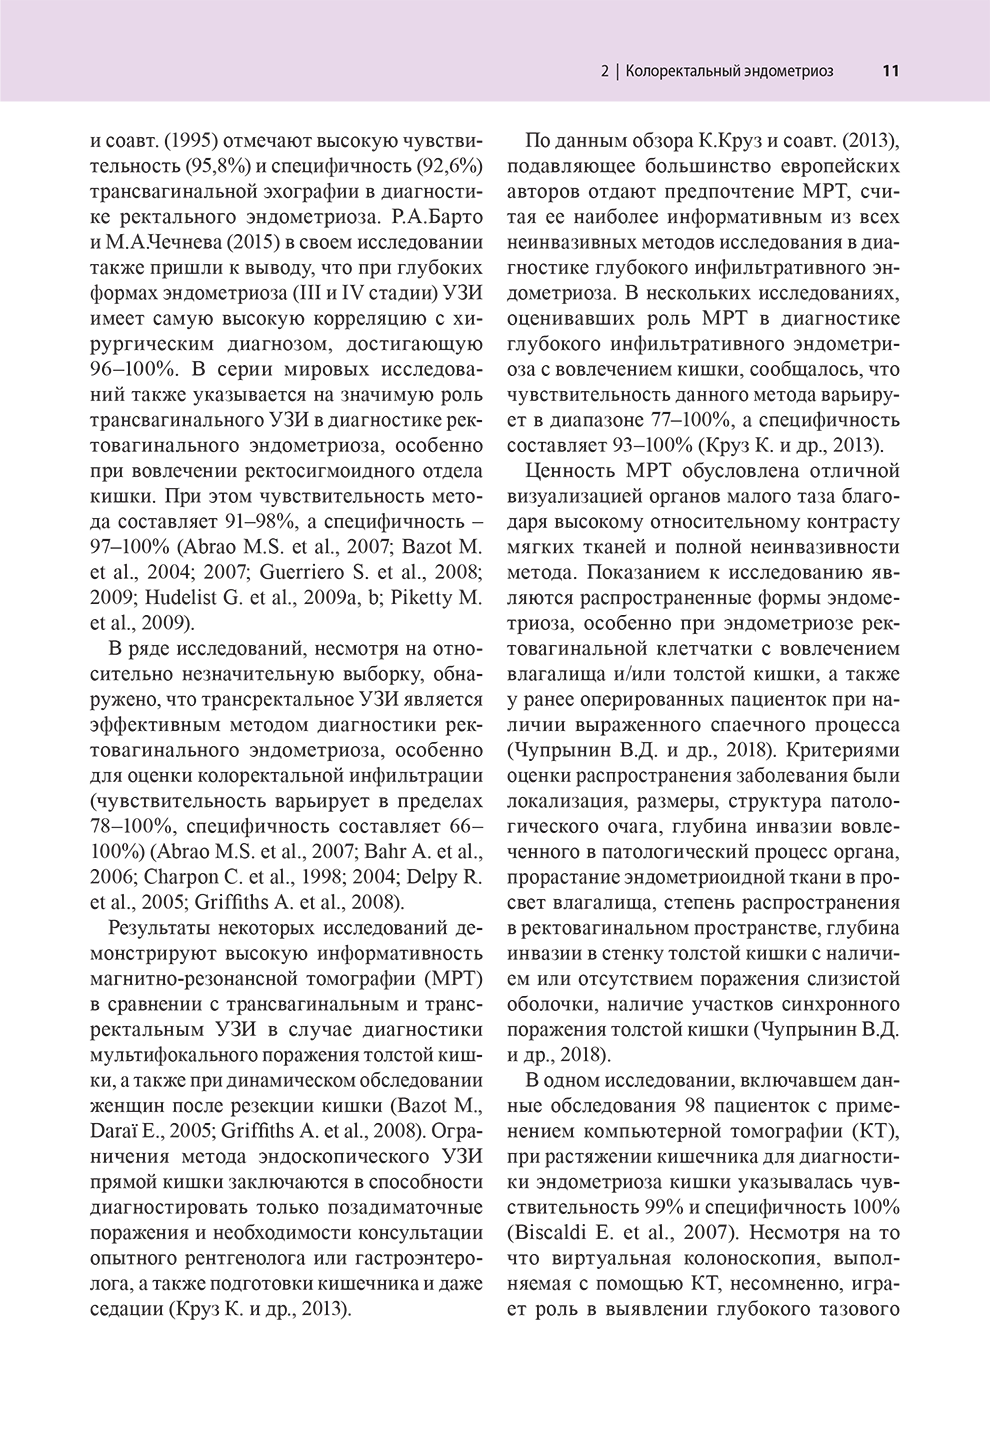 Пример страницы из книги "Атлас по эндоскопической диагностике колоректального эндометриоза" - Матроницкий Р. Б.